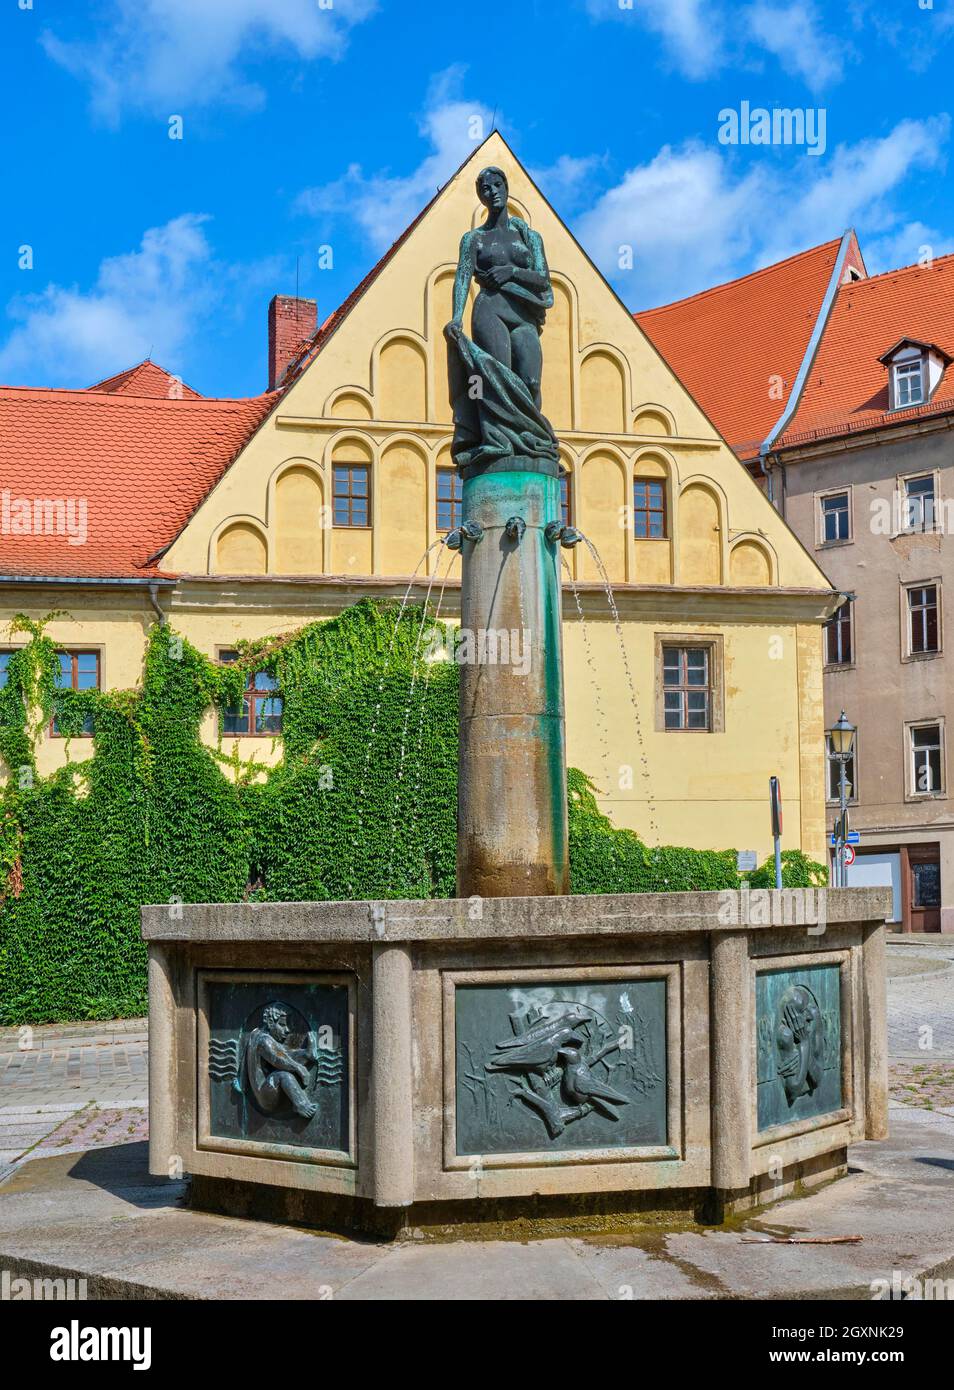 Fontaine four Seasons également fontaine de vêtement par le sculpteur Martin Wetzel, Merseburg, Saxe-Anhalt, Allemagne Banque D'Images